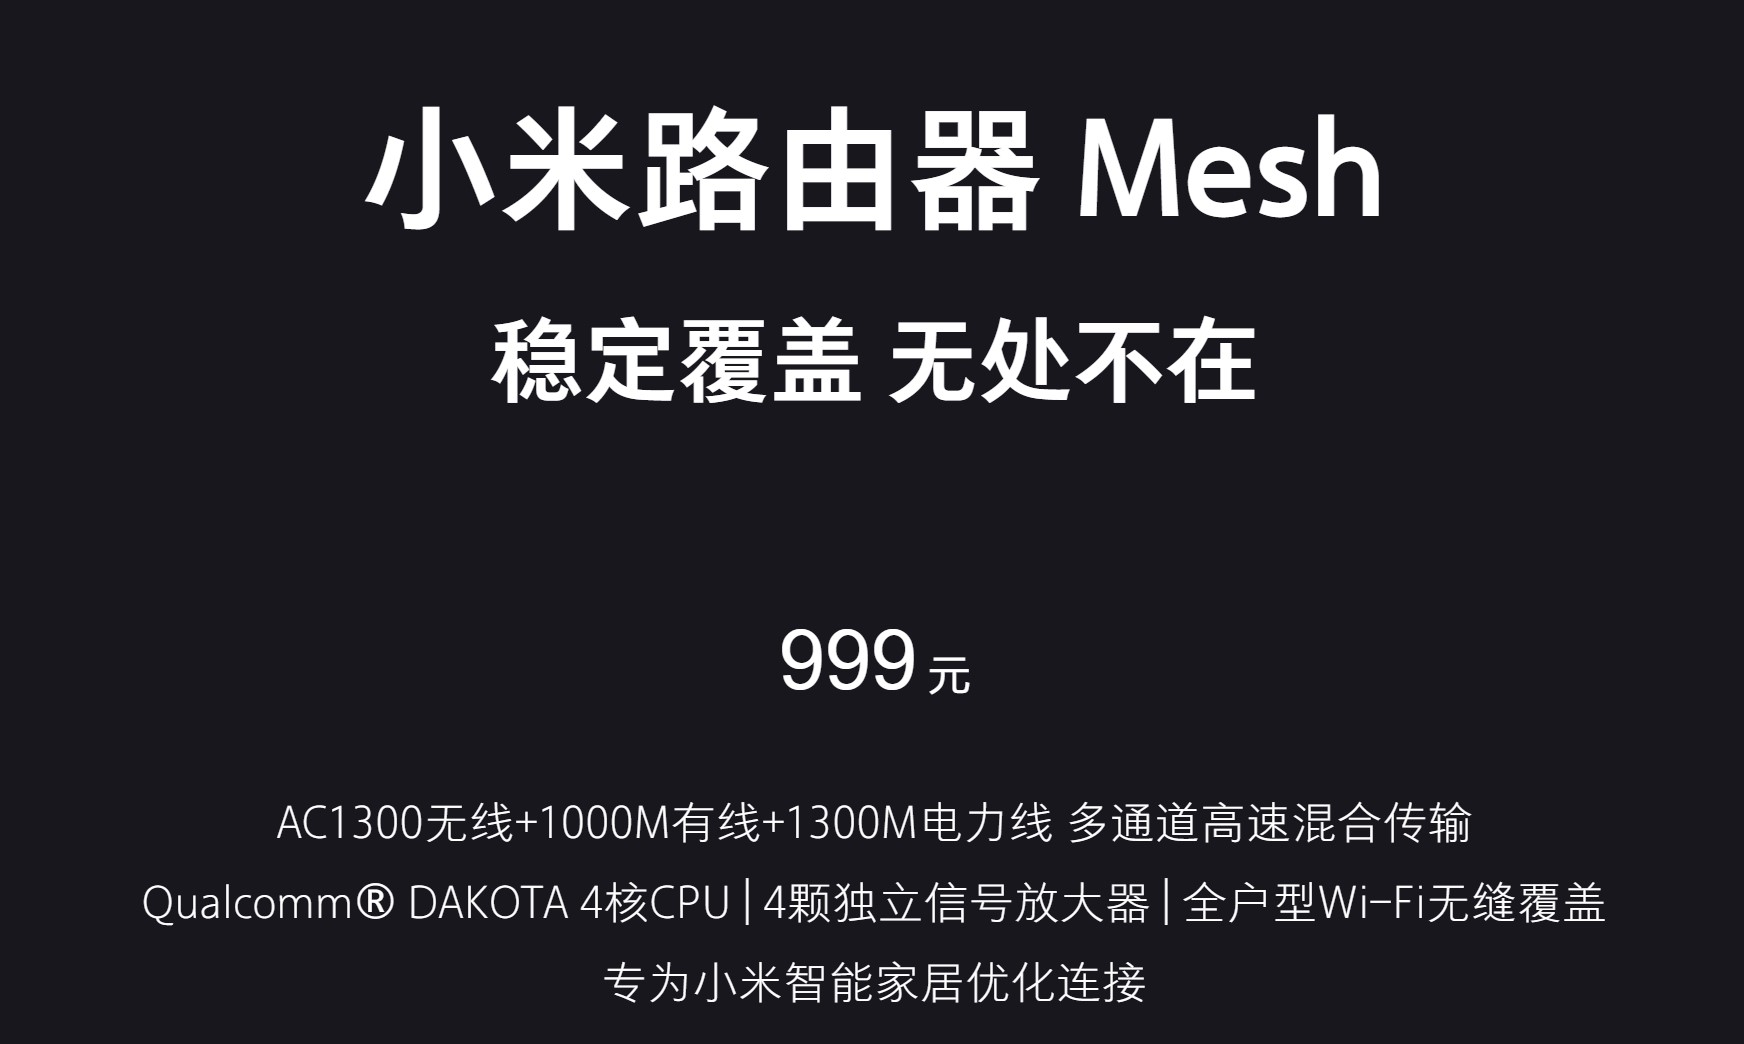 路由器也要玩高端：小米Mesh路由器开卖 一套999元